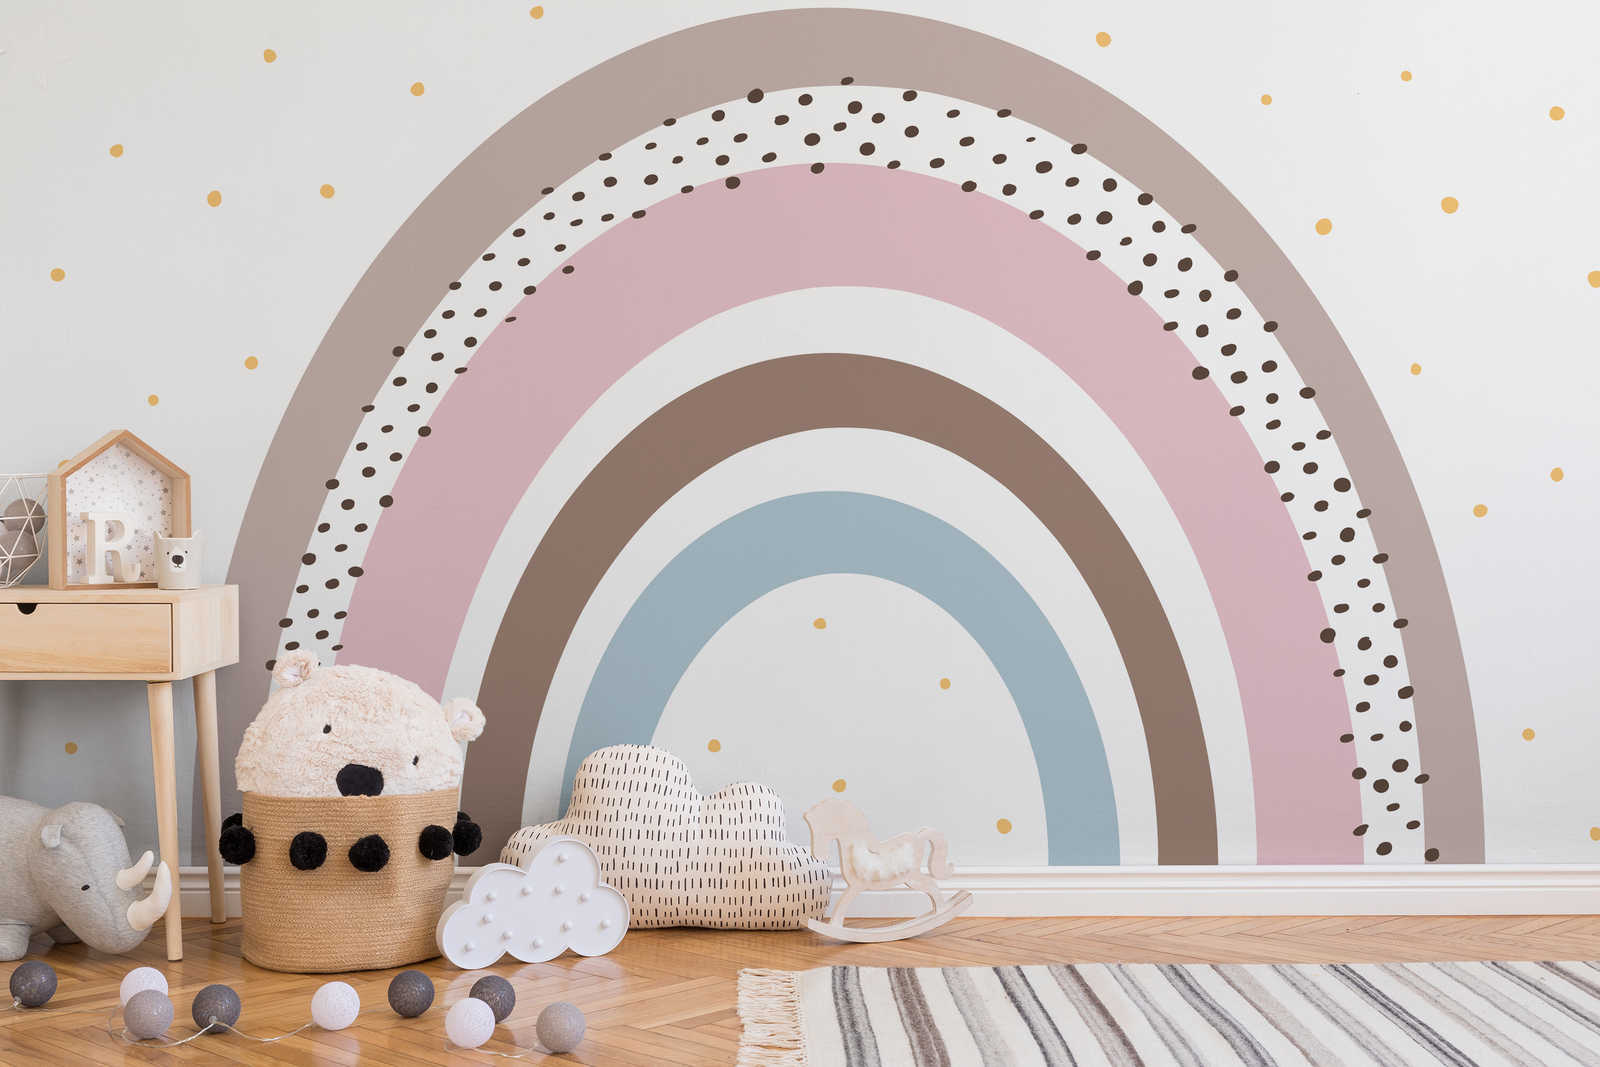             Papel pintado arco iris con lunares para la habitación del bebé
        